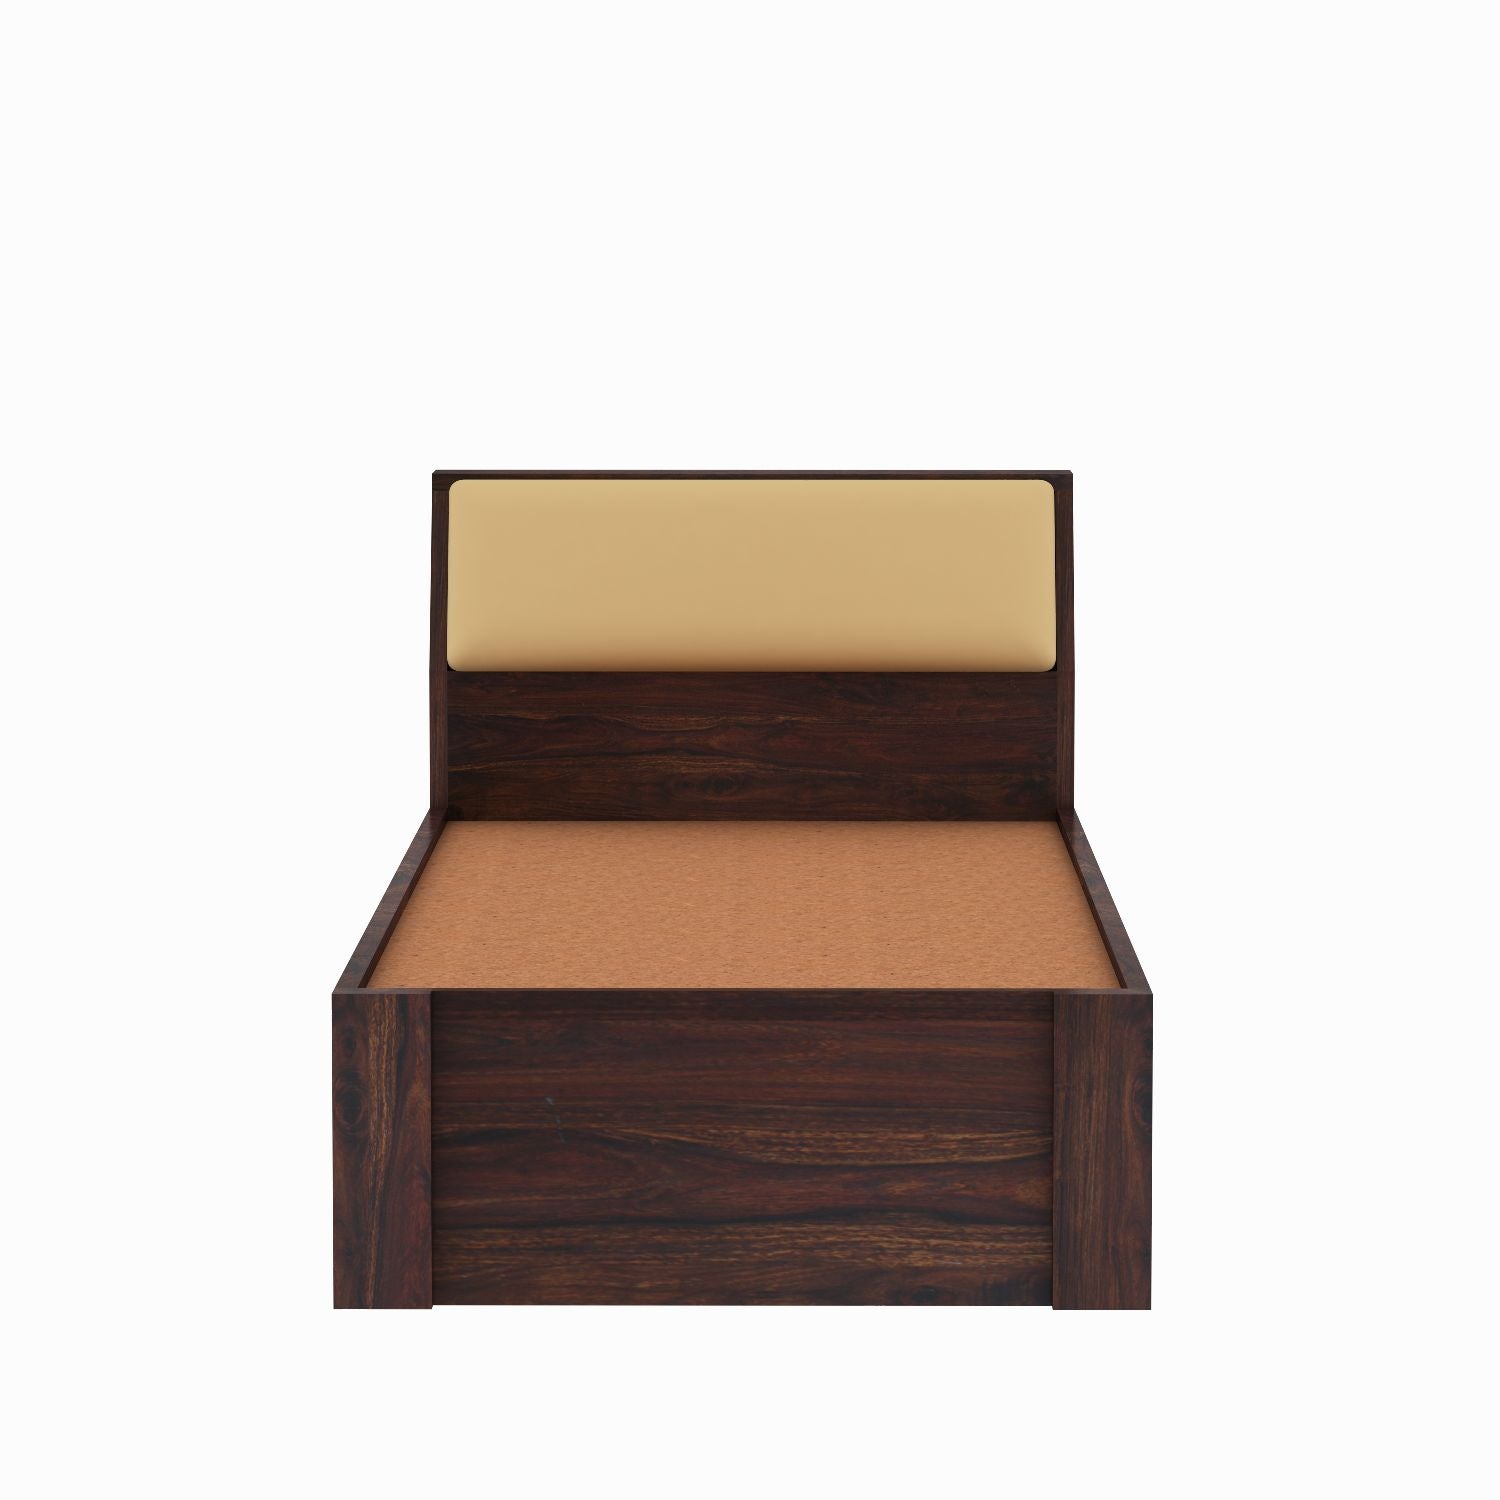 Rubikk Solid Sheesham Wood Single Bed Without Storage (Walnut Finish)